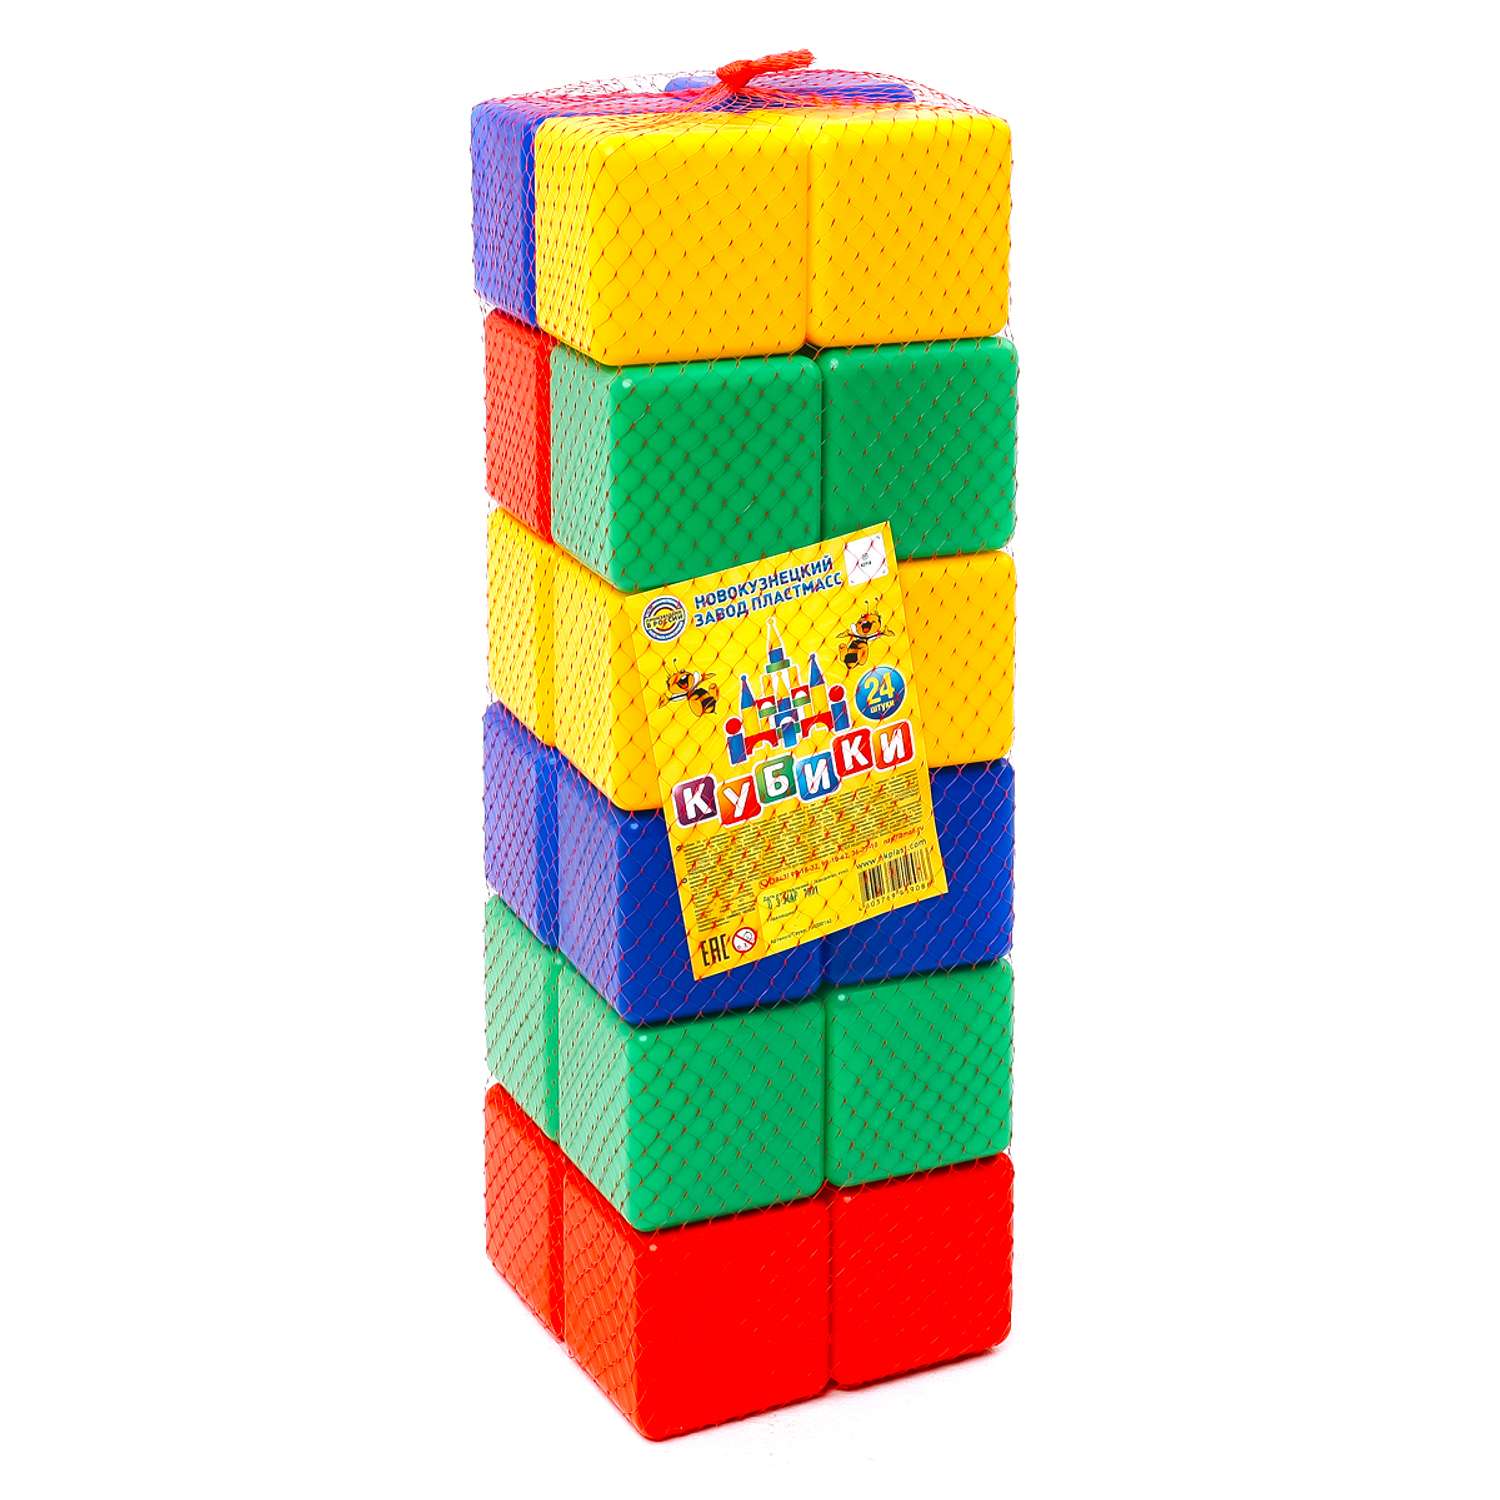 Игровой набор для детей Новокузнецкий Завод Пластмасс Кубики цветные развивающие 24 шт - фото 2